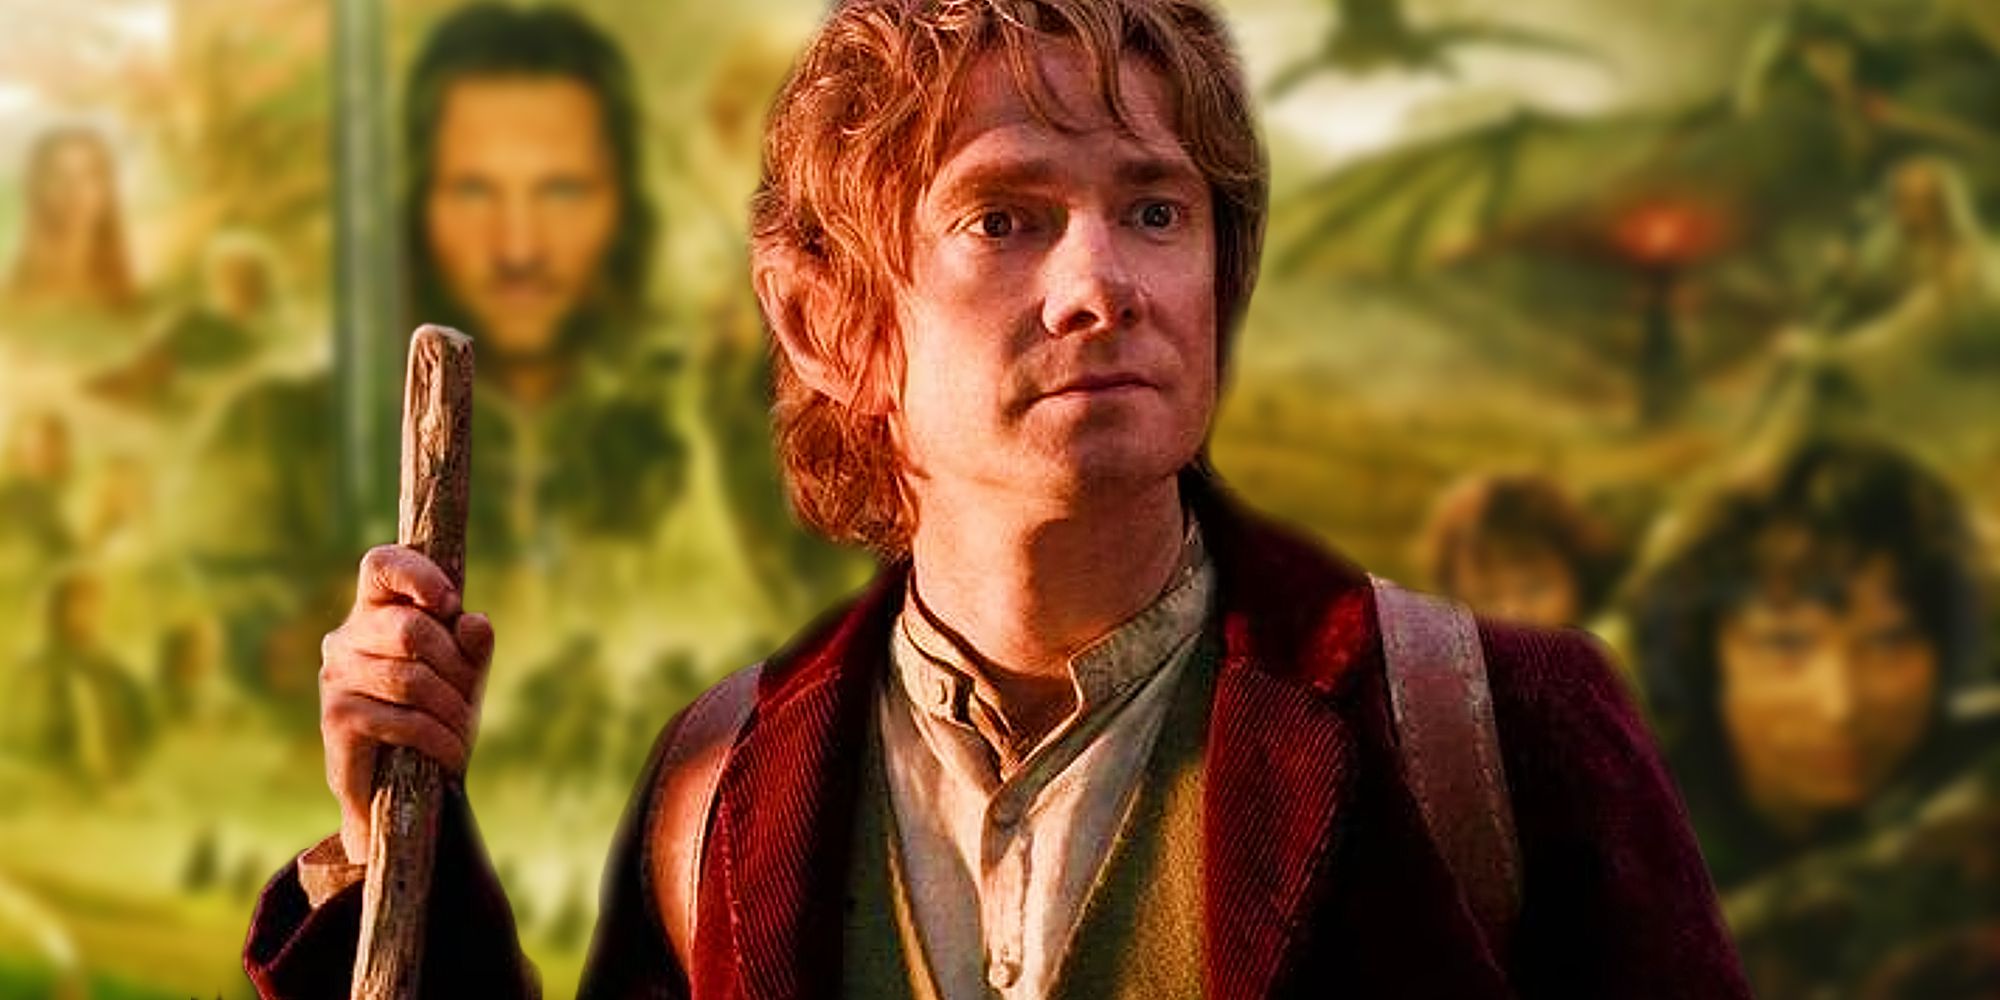 Bilbo Baggins z trylogii Hobbit nad zamazanym plakatem Władcy Pierścieni